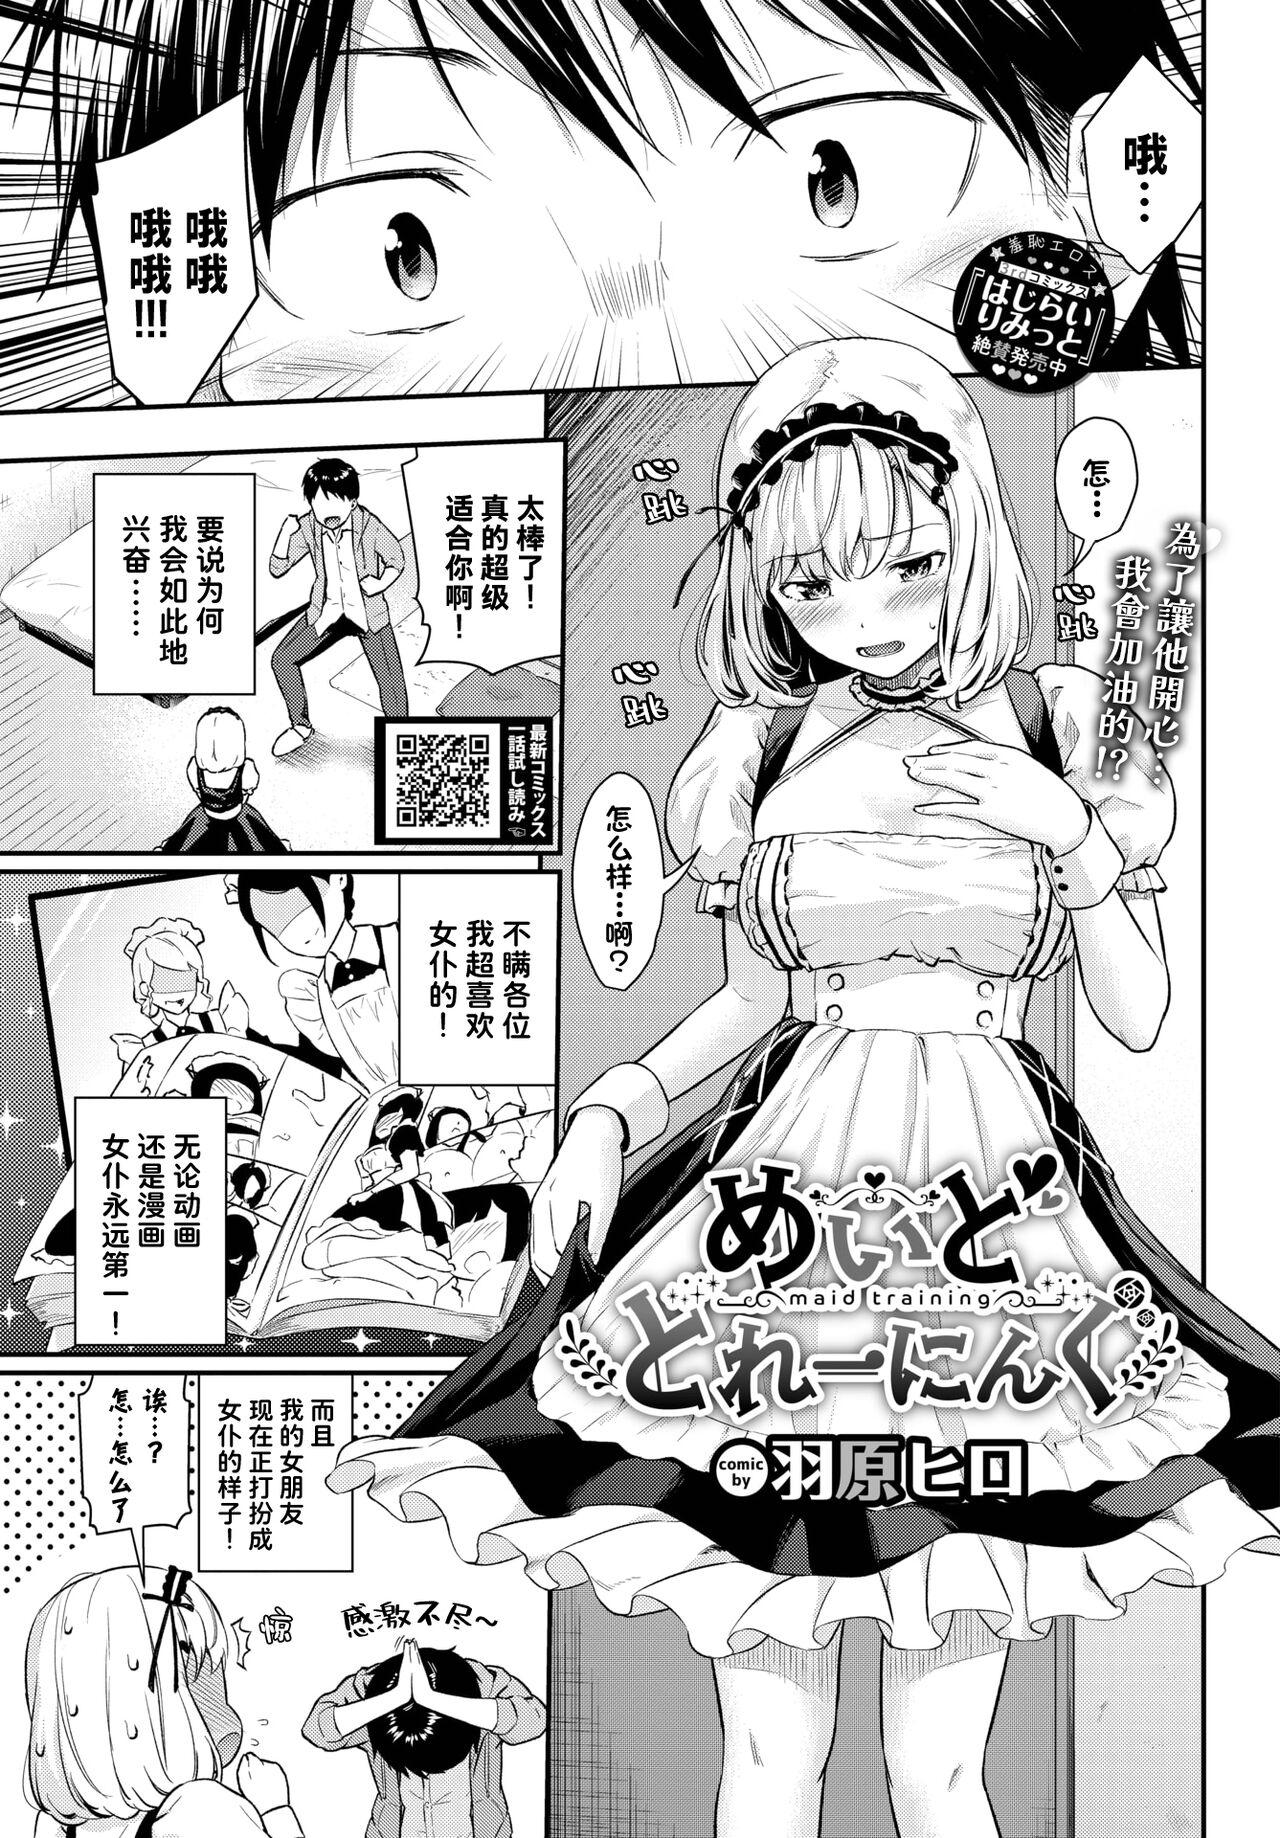 Asslick Maid Training Amatuer - Page 2